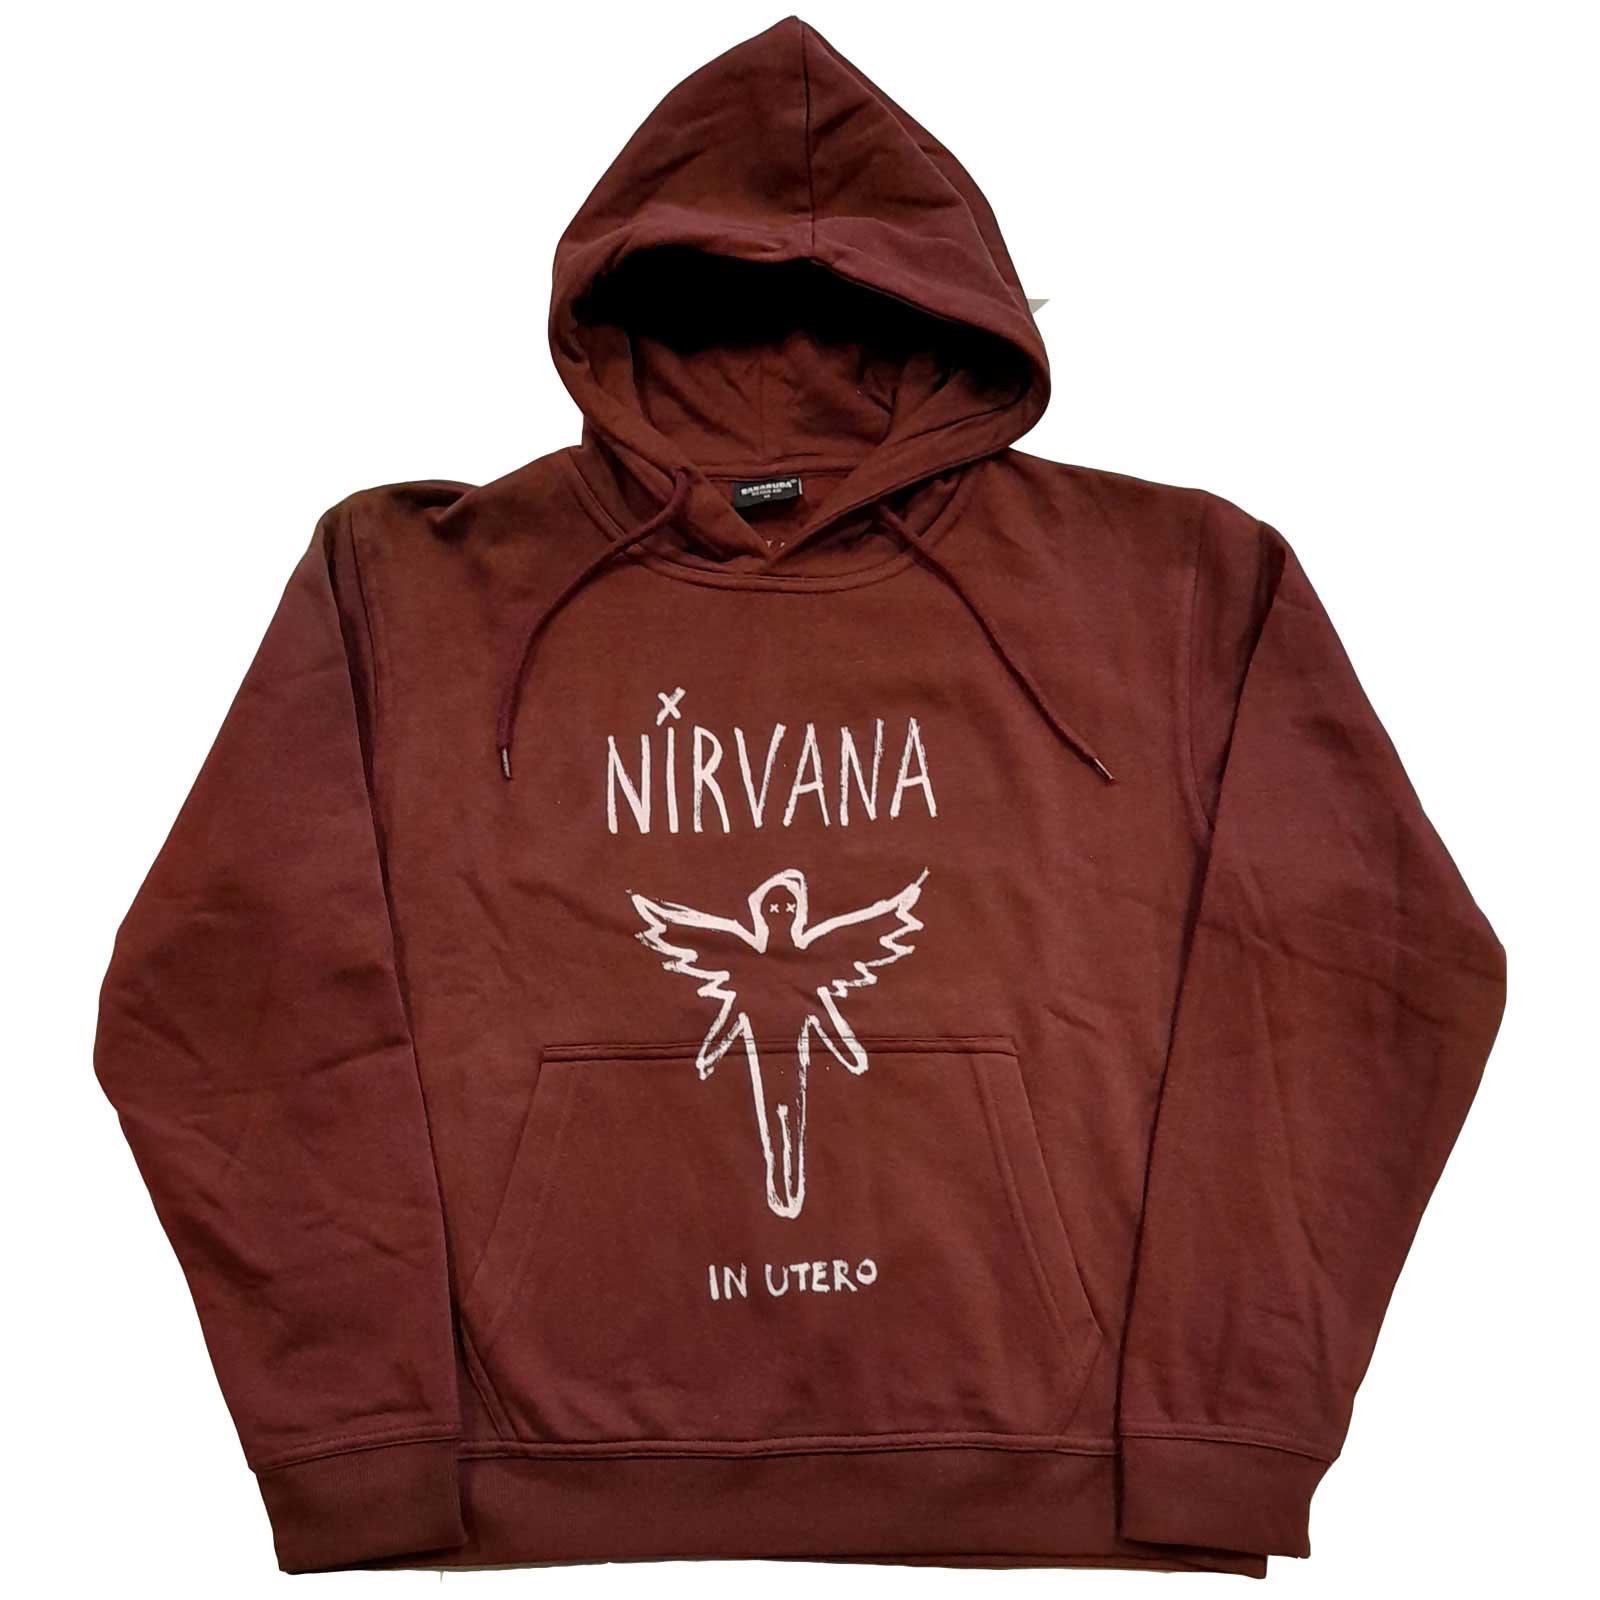 Abbigliamento Nirvana: In Utero Outline (Felpa Con Cappuccio Unisex Tg. XL) NUOVO SIGILLATO SUBITO DISPONIBILE